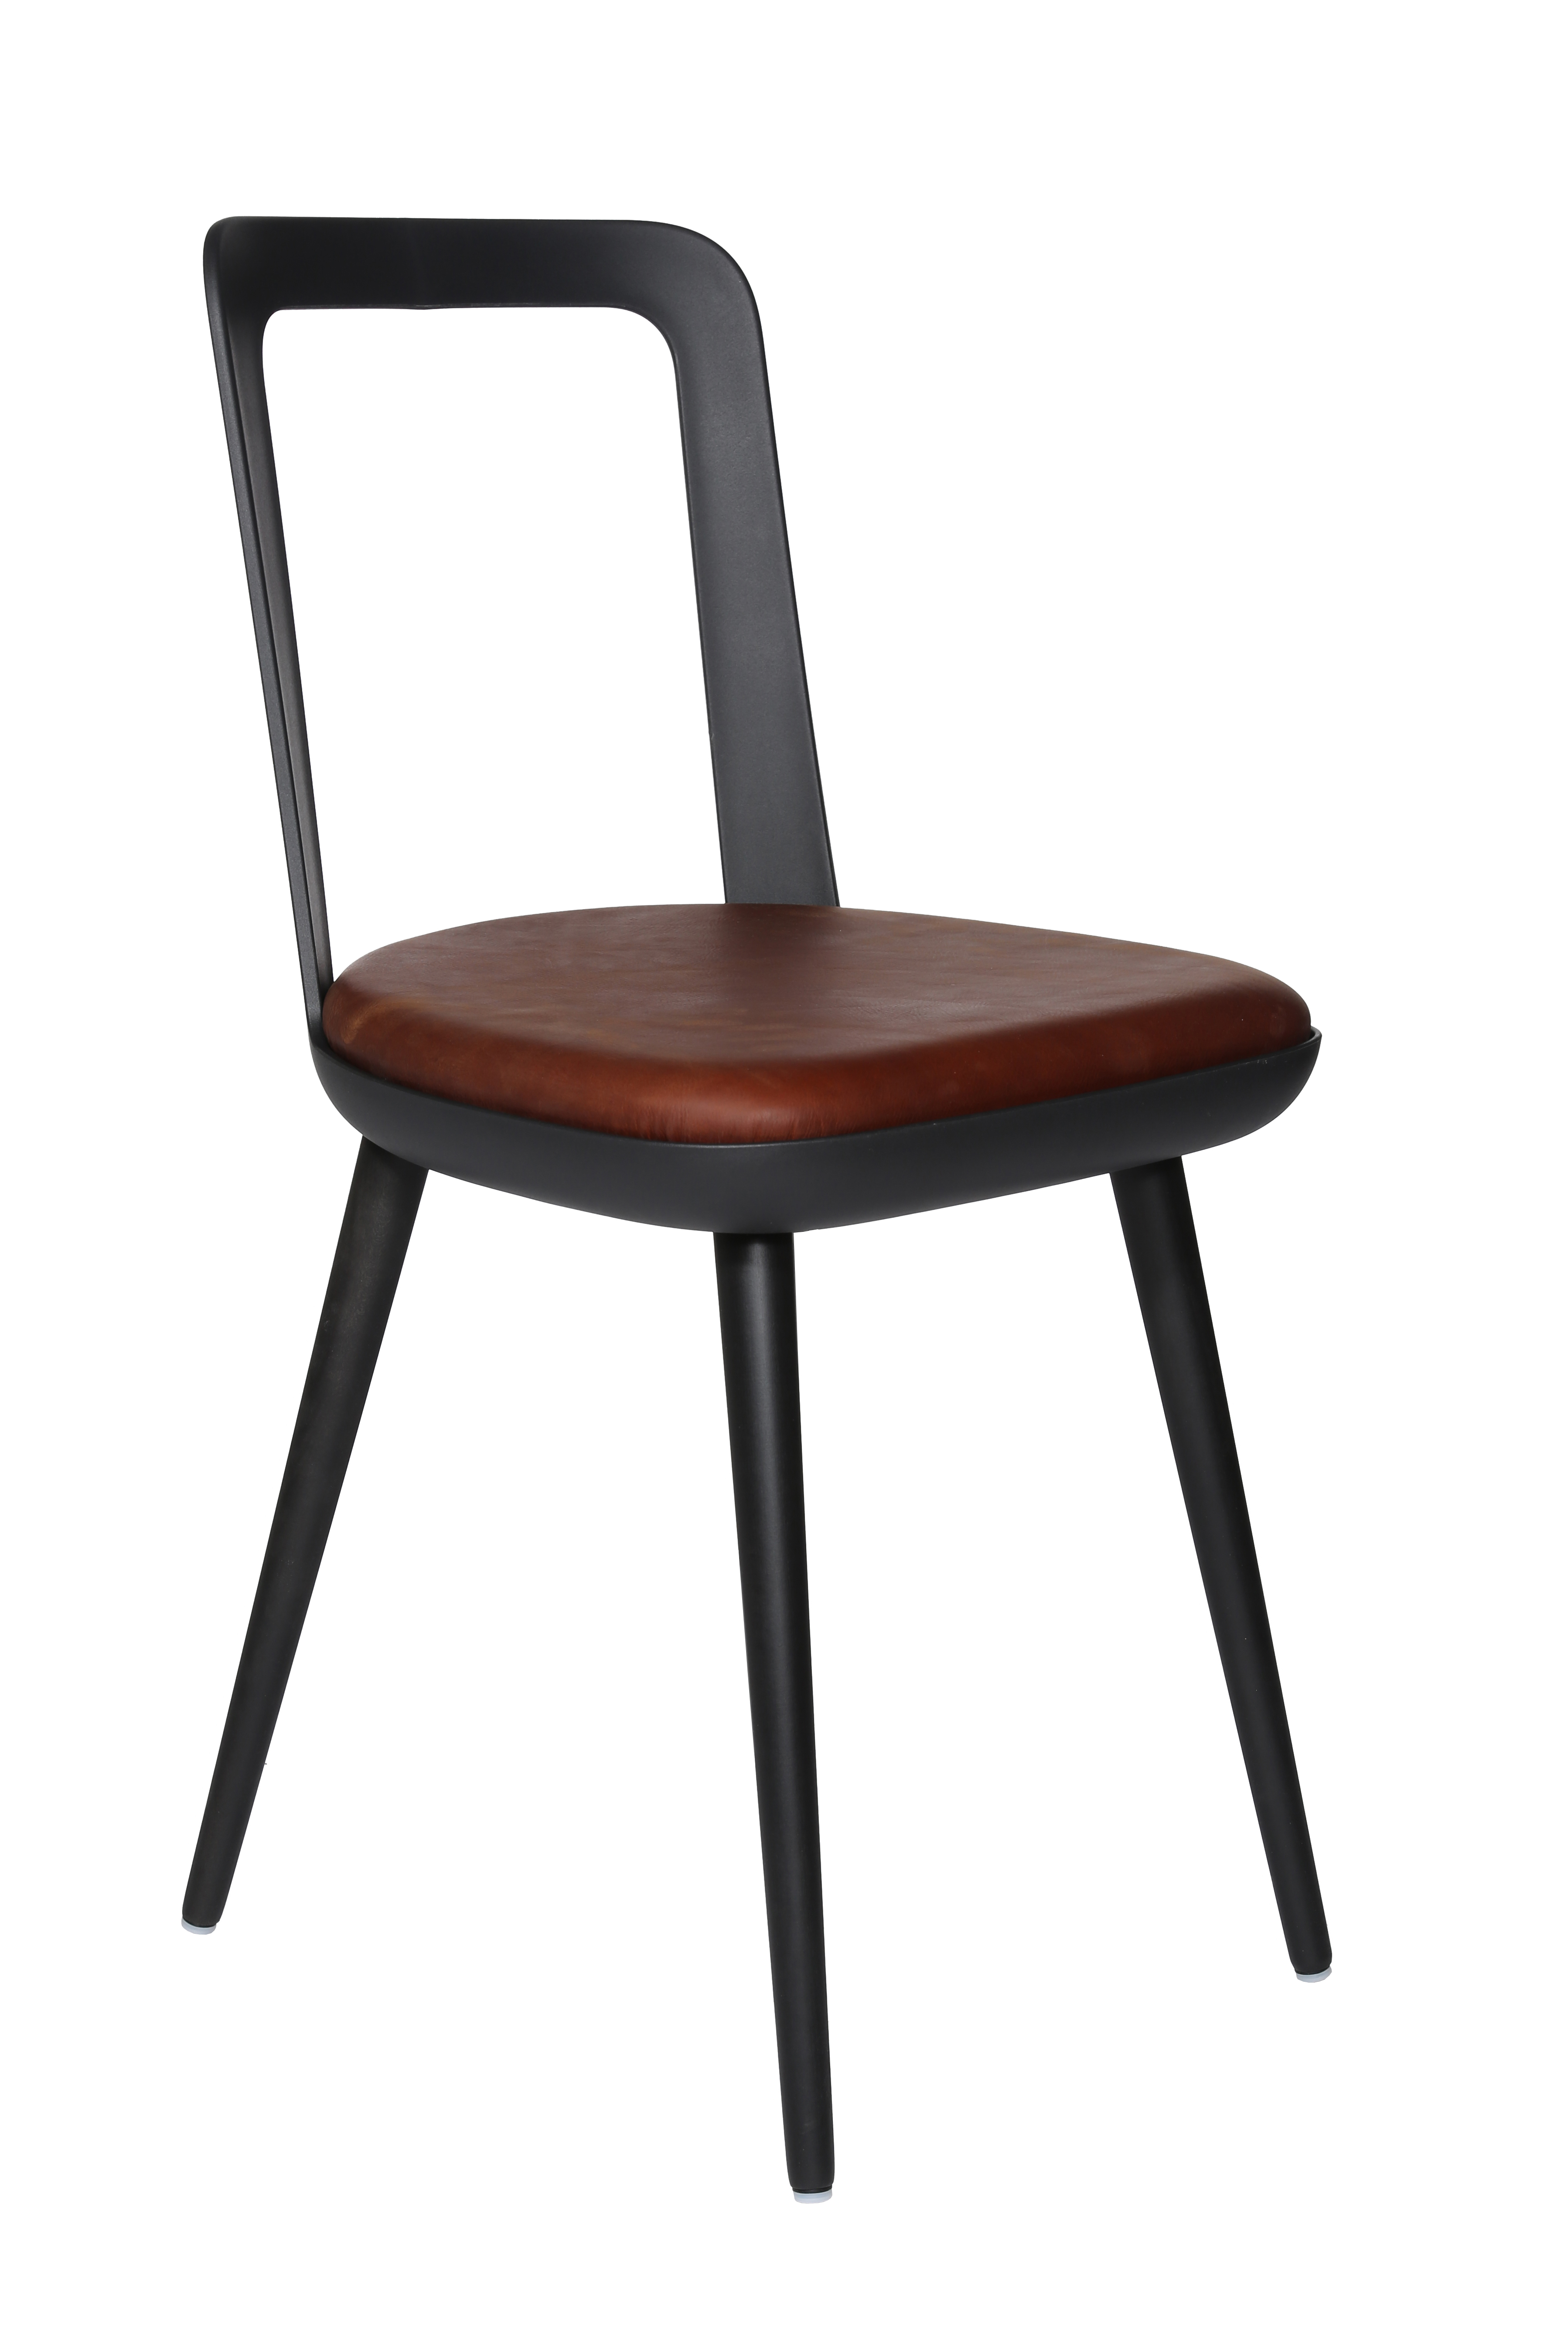 Esszimmerstuhl Wagner W-2020 Chair charcoal black - cognac (Leder)